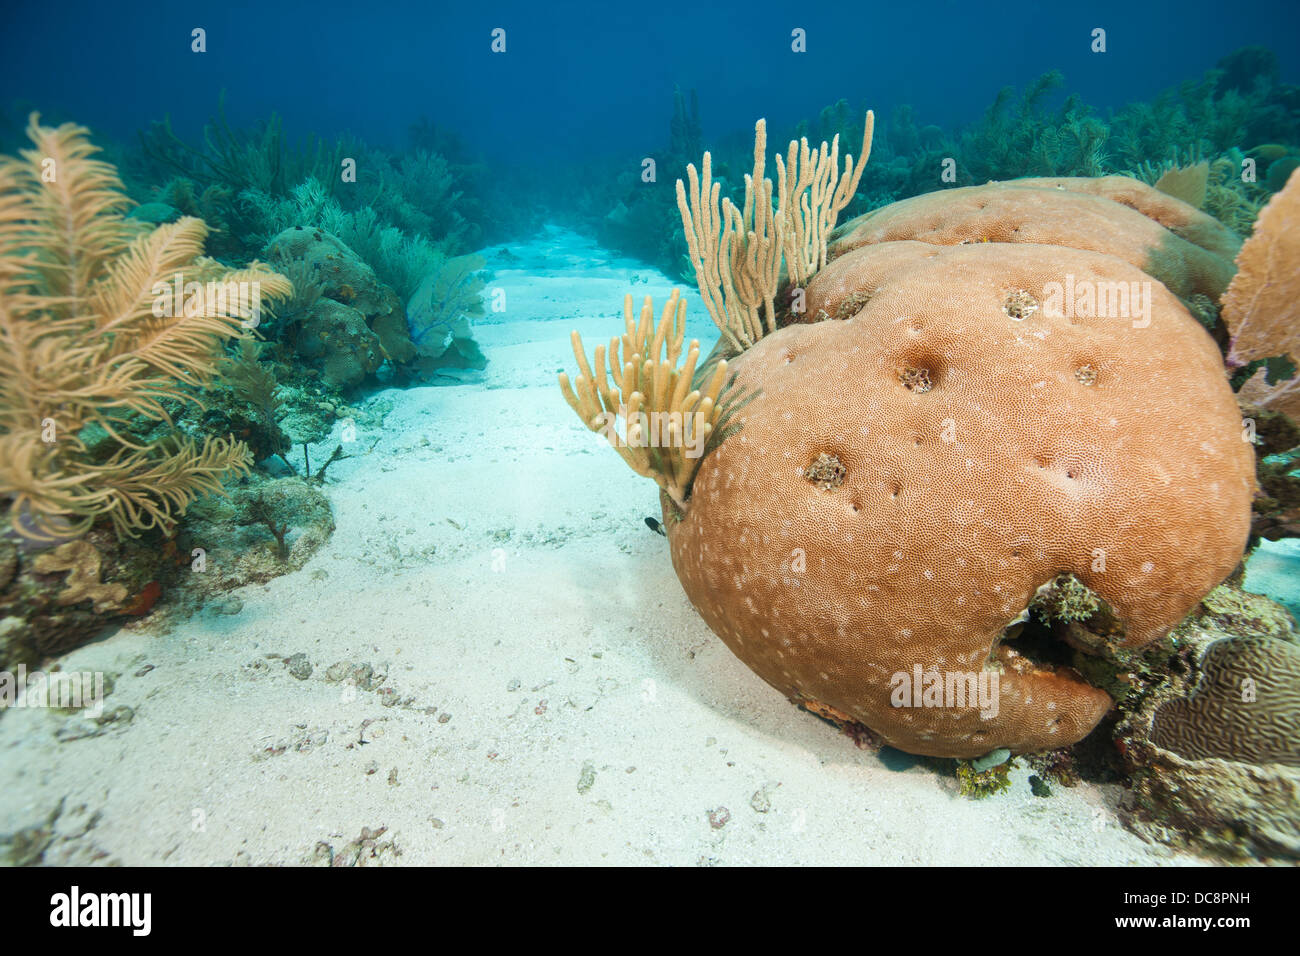 Massive Starlet Coral (Siderastrea la siderea) nella parte anteriore di un corridoio di sabbia su un tropical Coral reef Foto Stock